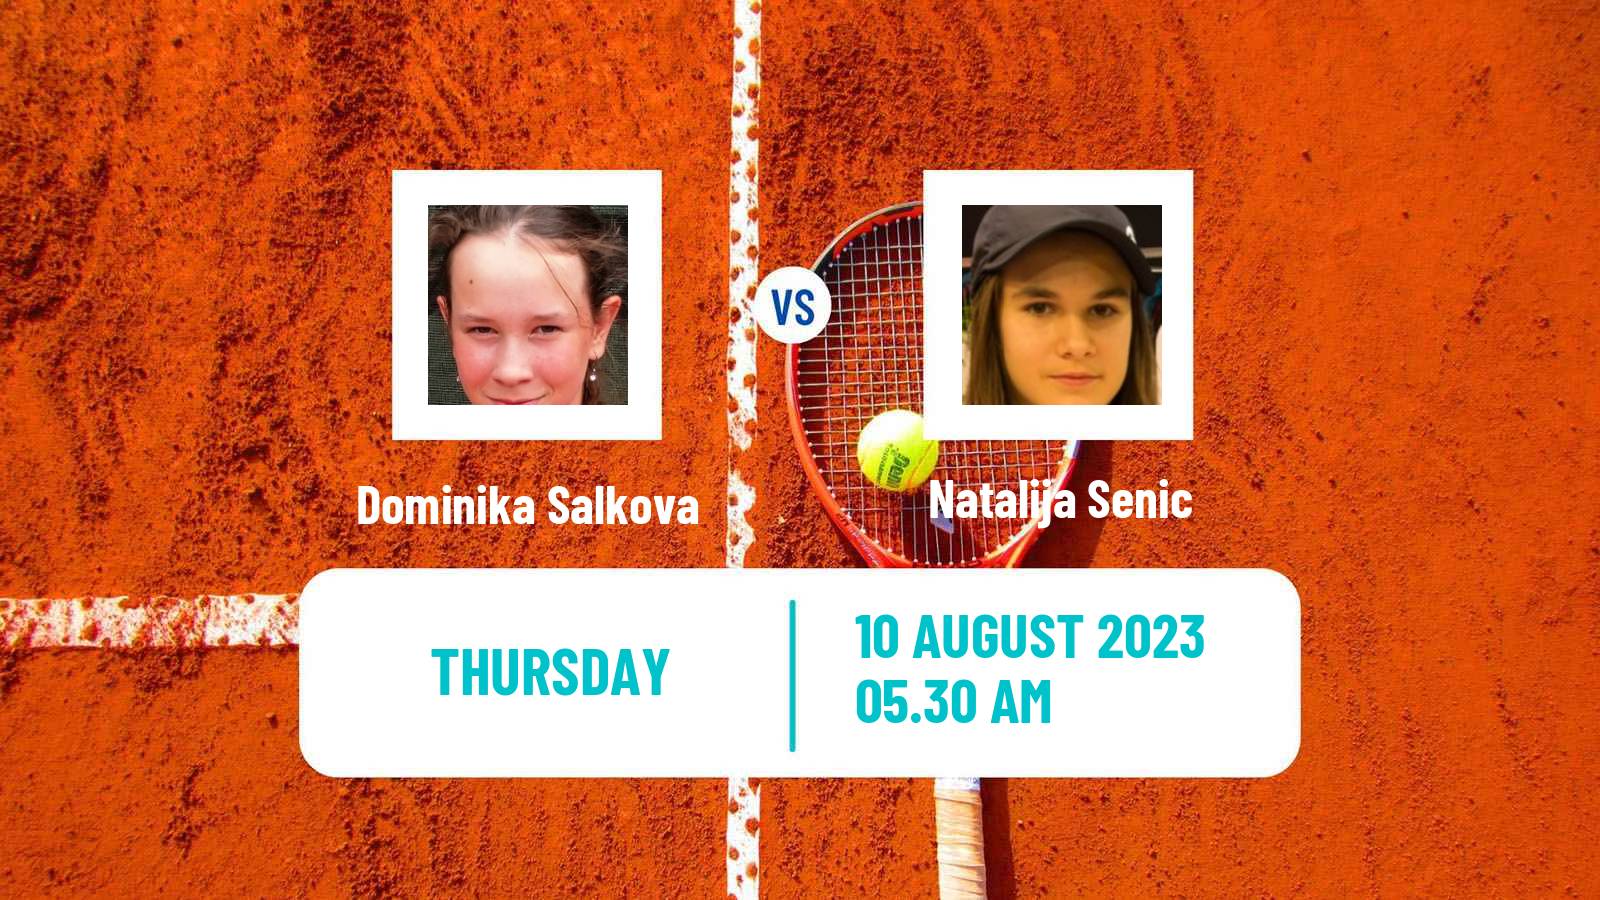 Tennis ITF W25 Osijek 2 Women Dominika Salkova - Natalija Senic